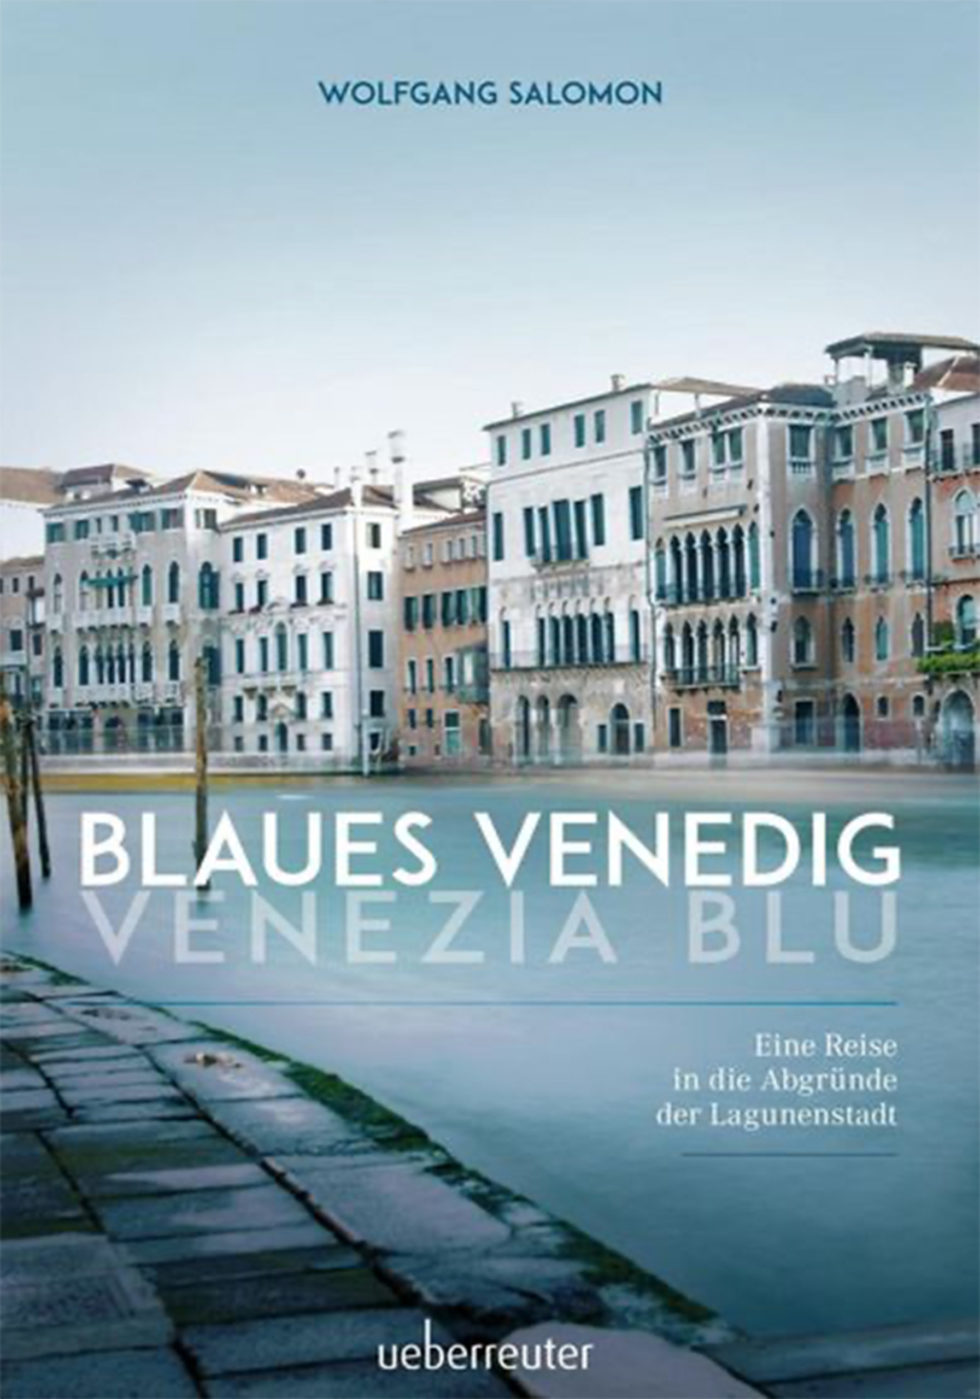 Blaues Venedig Venezia Blu | Eine Reise in die Abgründe der Lagunenstadt | ueberreuter | Buch | Wolfgang Salomon | abseitsderpfade.at | Abseits der Pfade